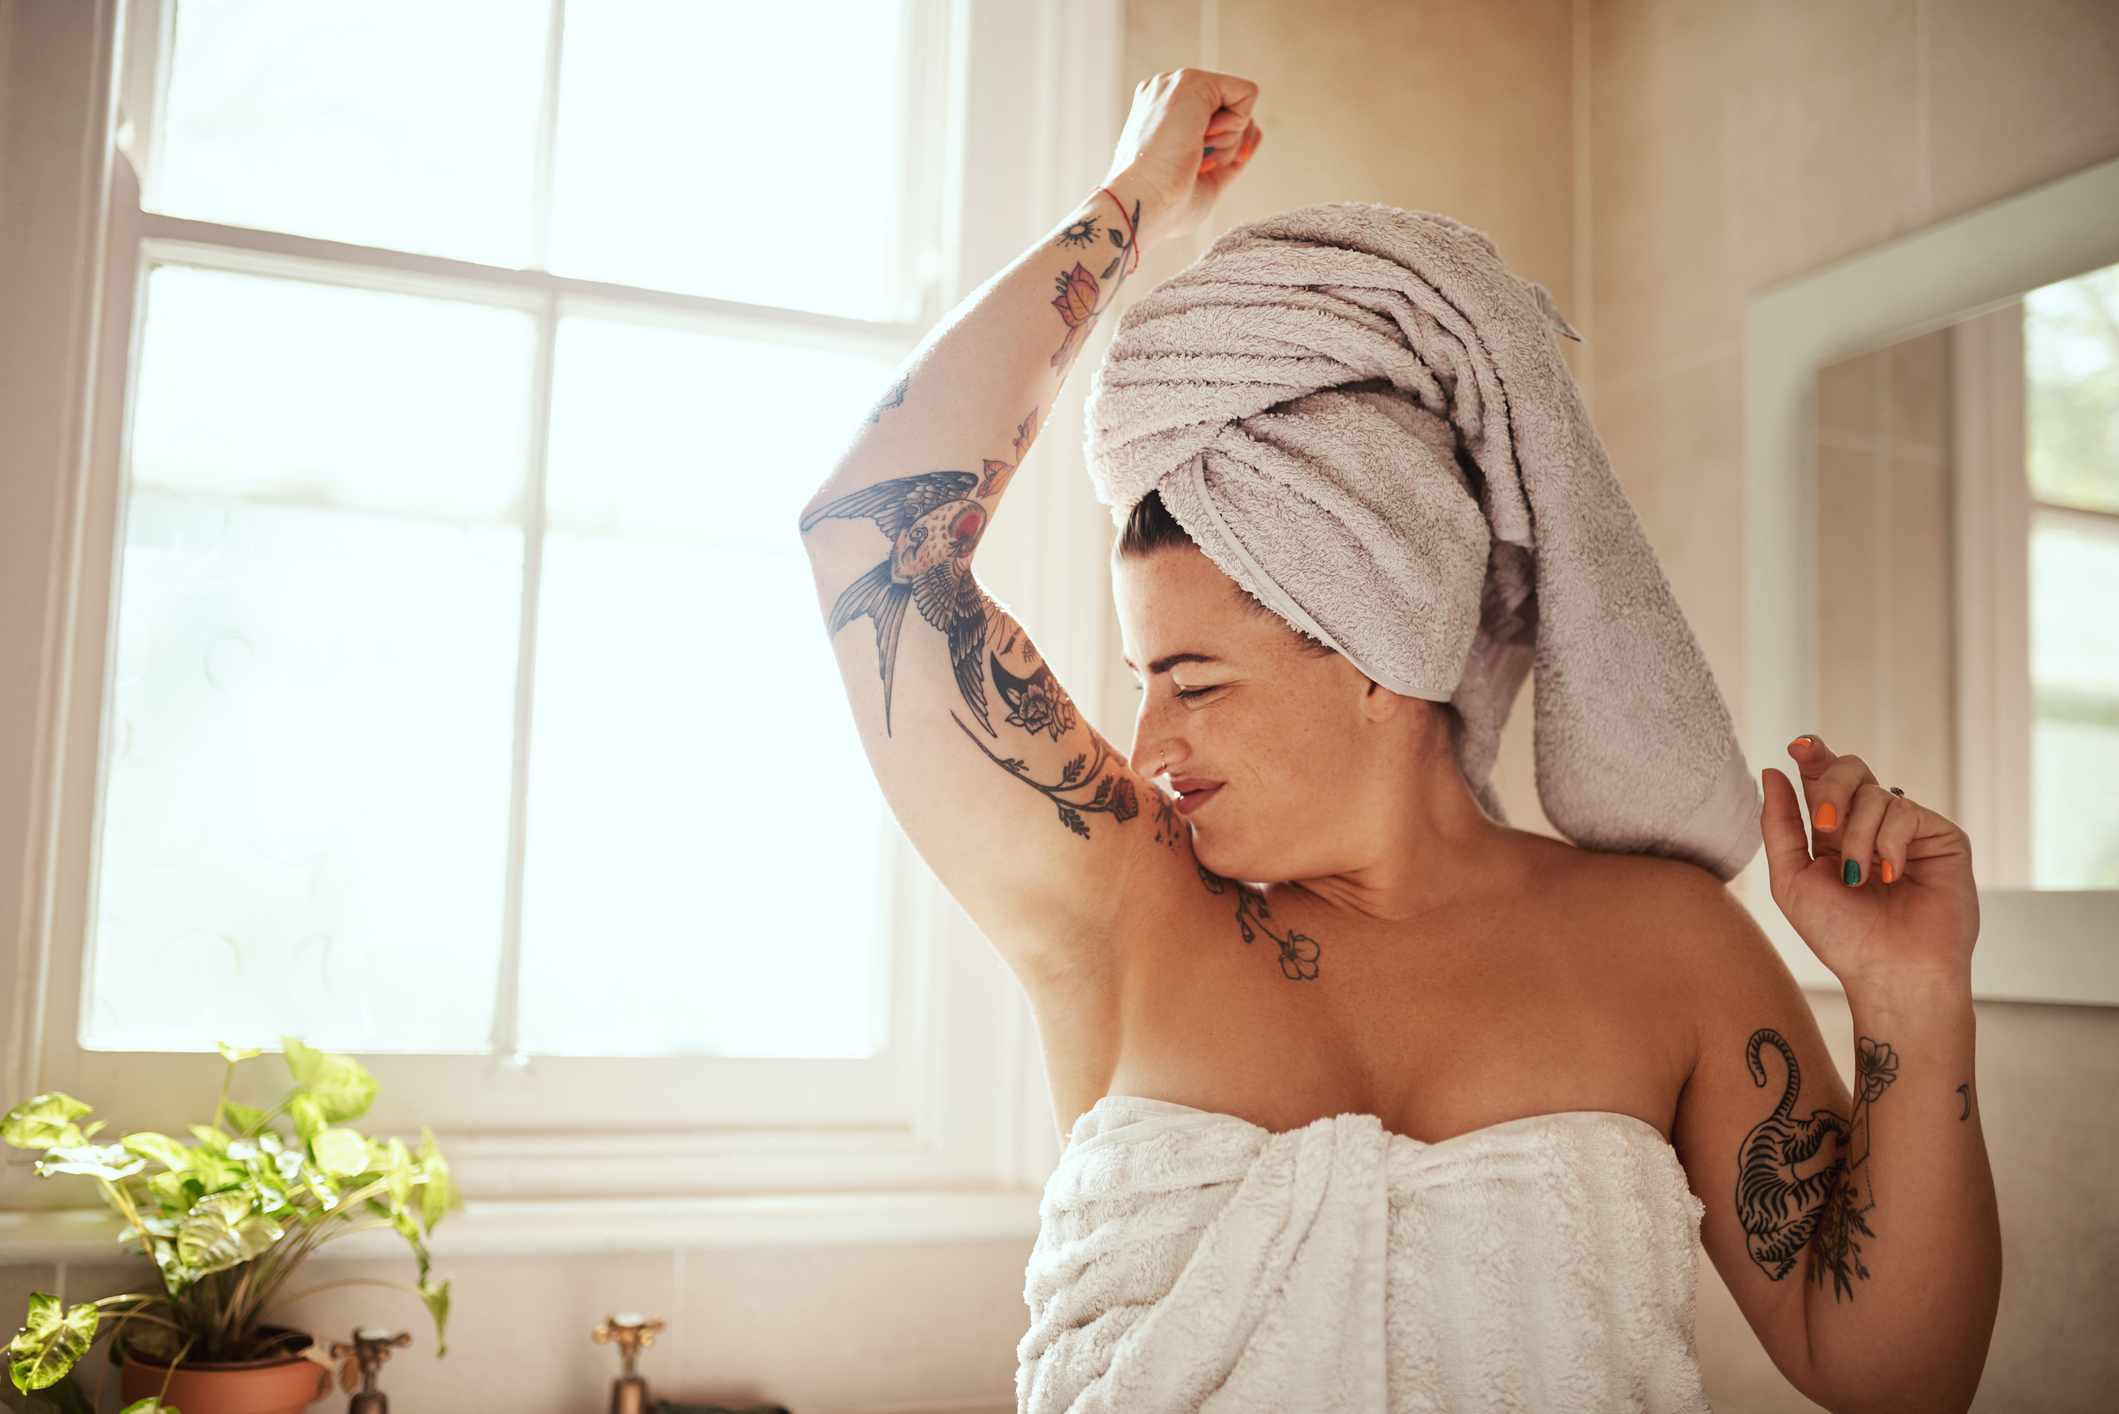 Una mujer blanca con tatuajes oliendo sus axilas en el lavabo